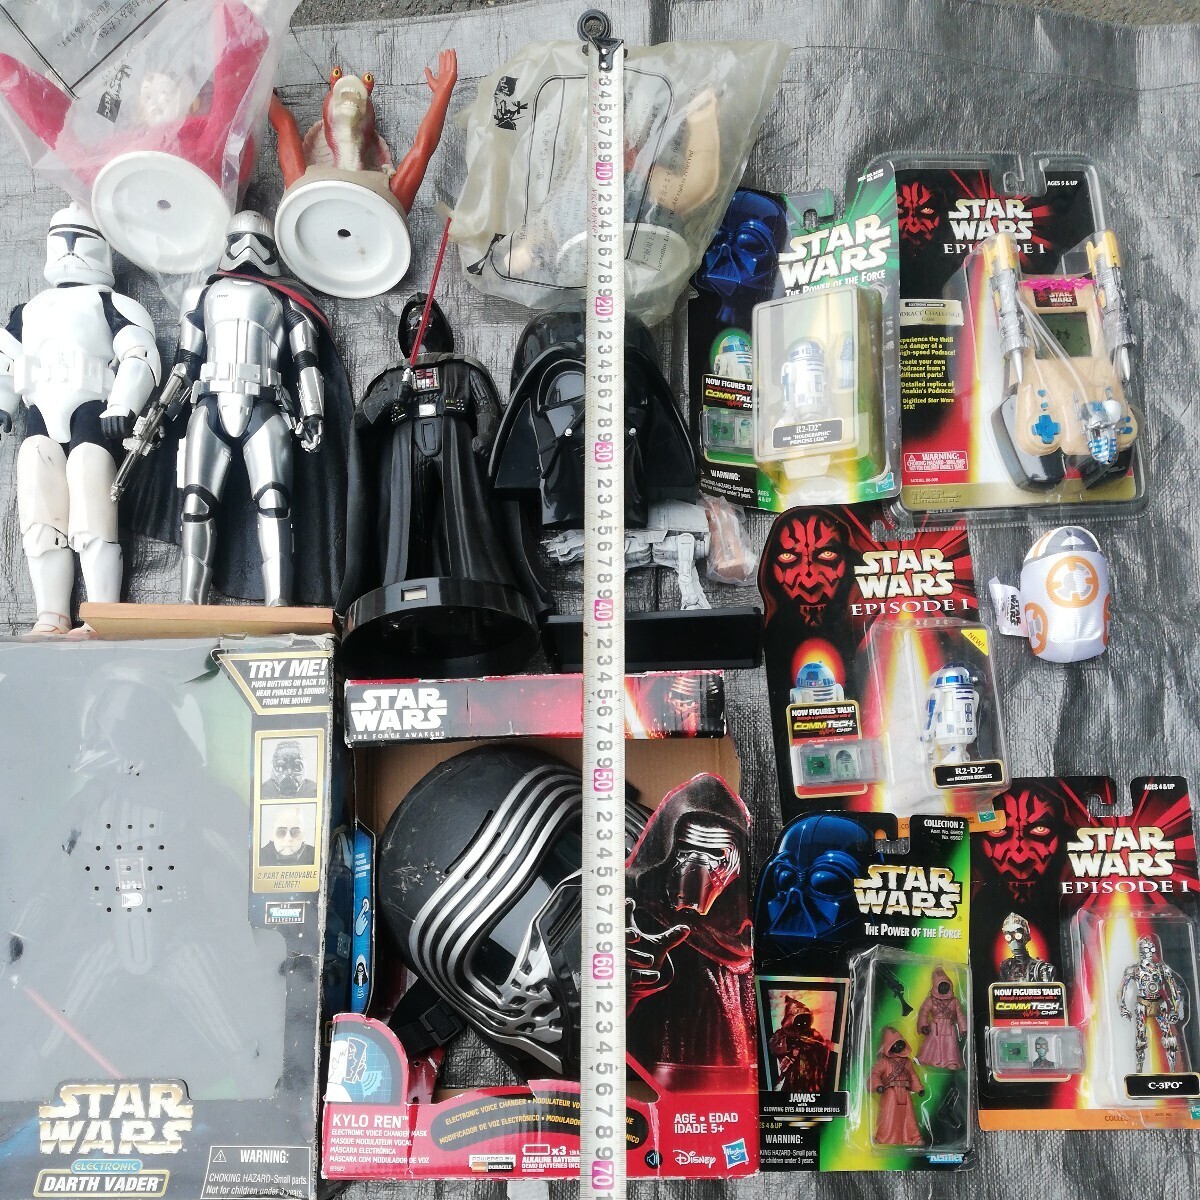  Star Wars STAR WARS figure STARWARS that time thing goods dozen * Bay da-